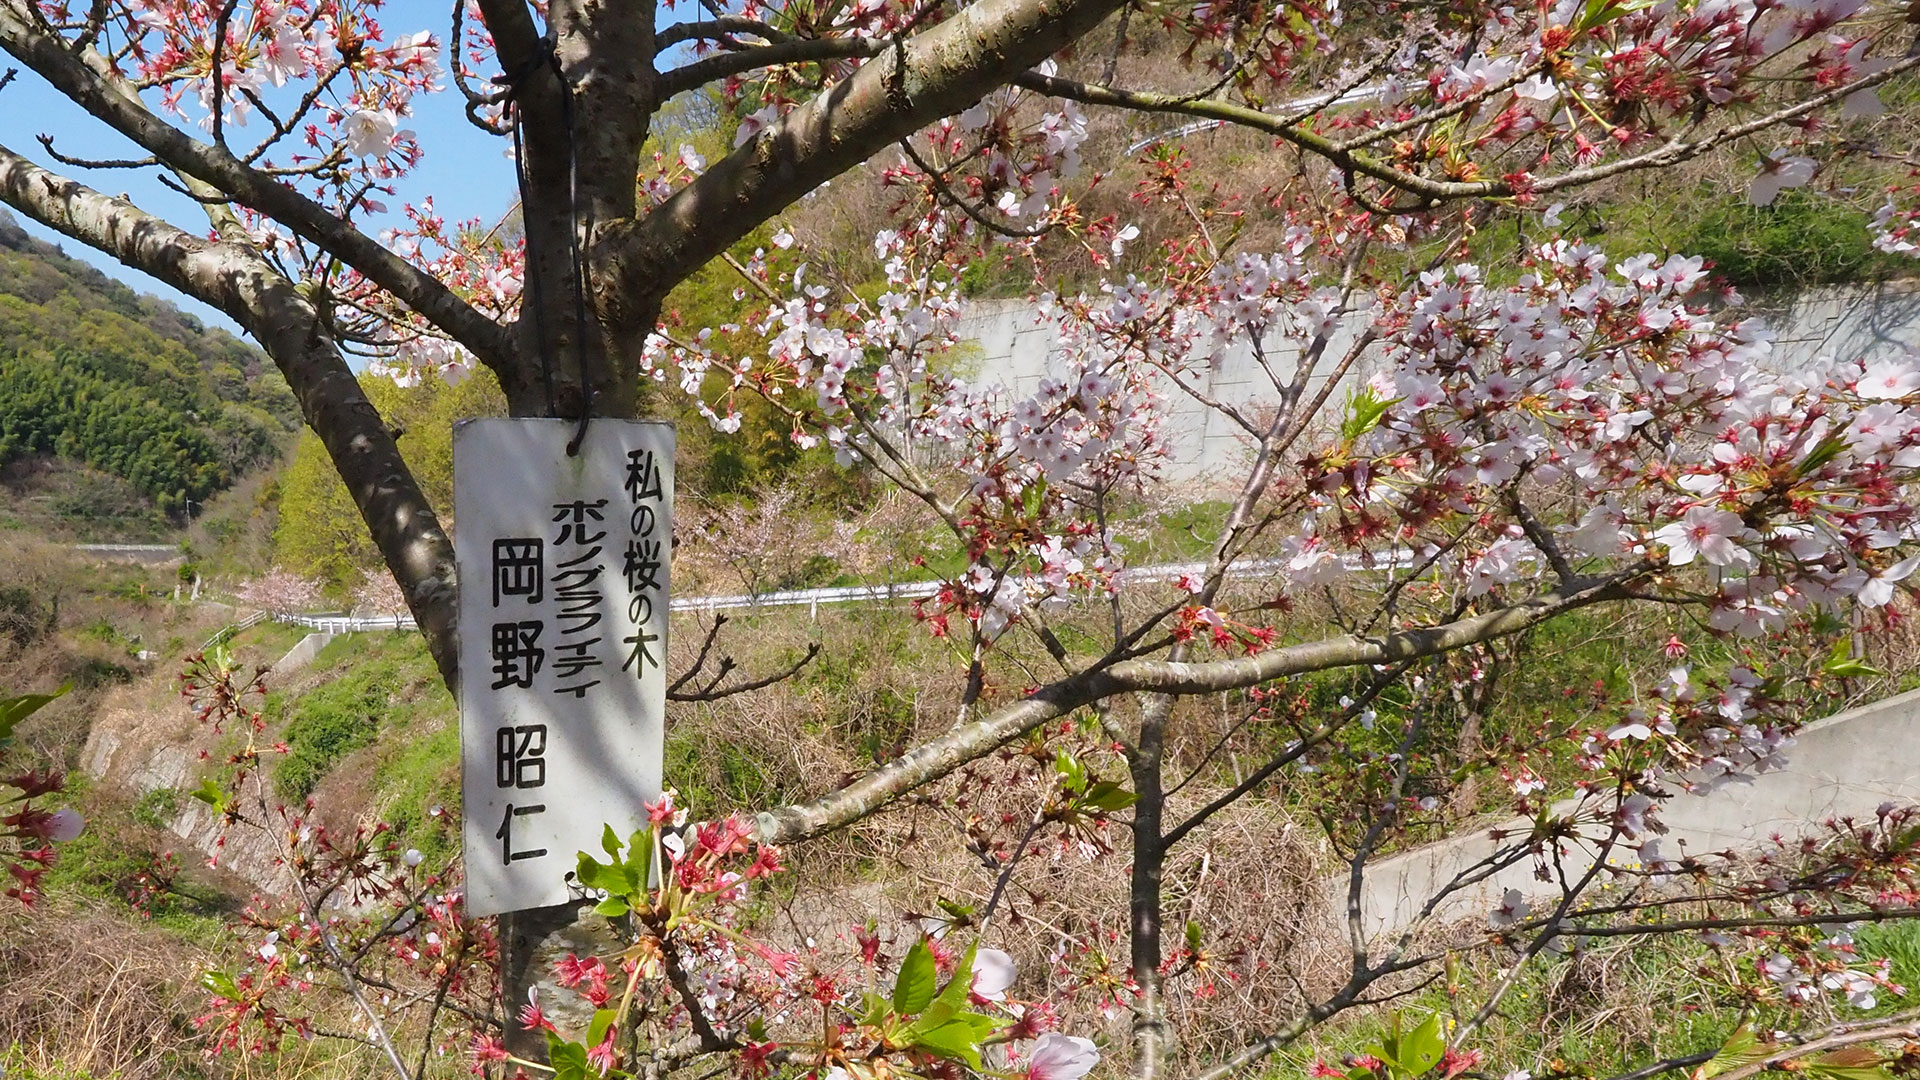 アキヒトの桜【ポルノグラフティ 岡野明仁】 Akihito Sakura